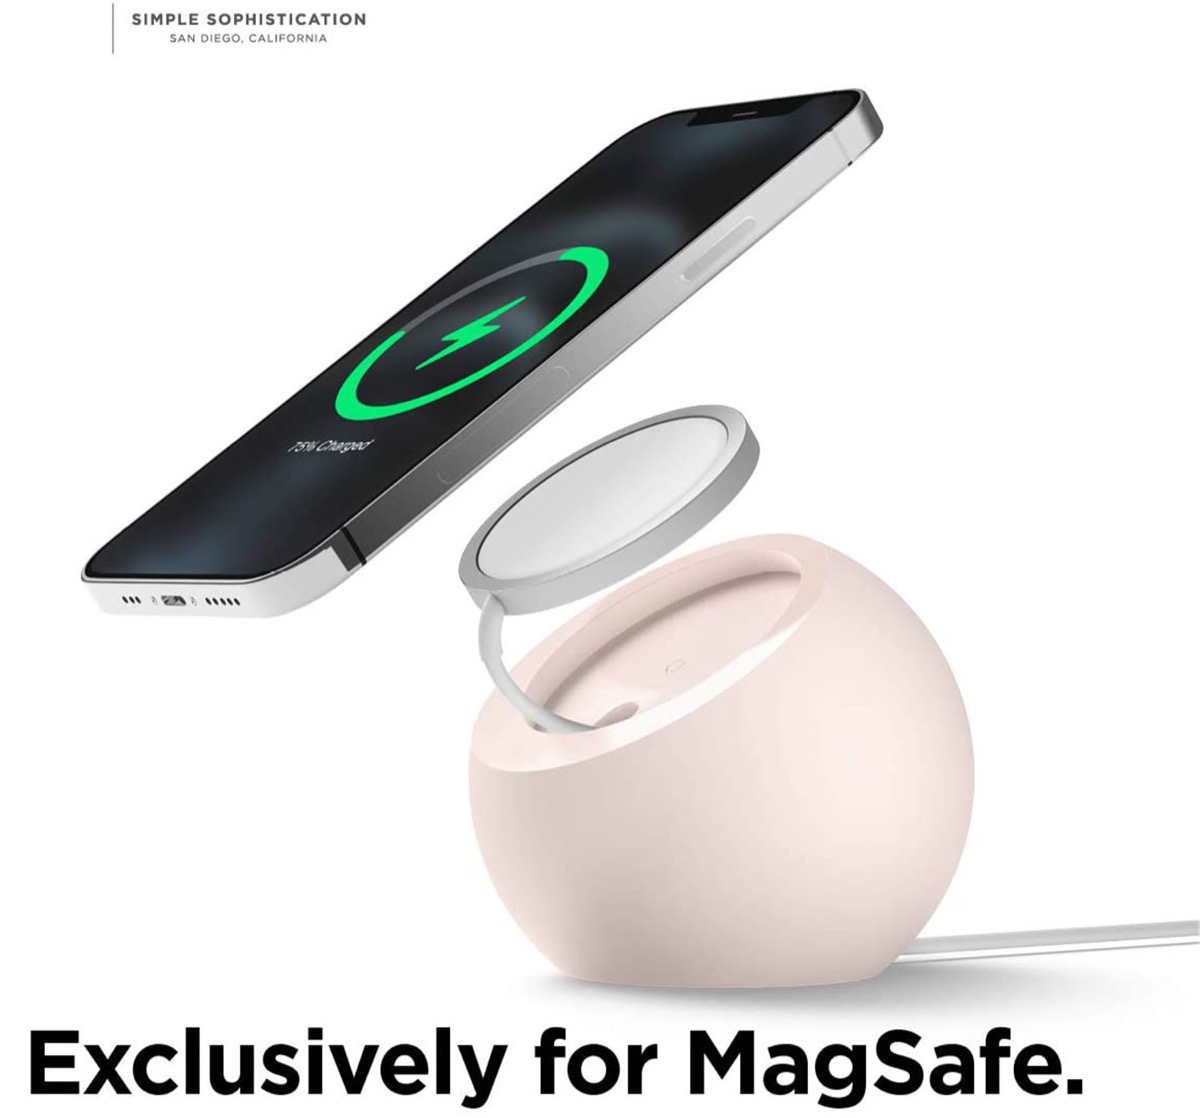 Il pod di ricarica per MagSafe iPhone 12 in offerta a 18 euro